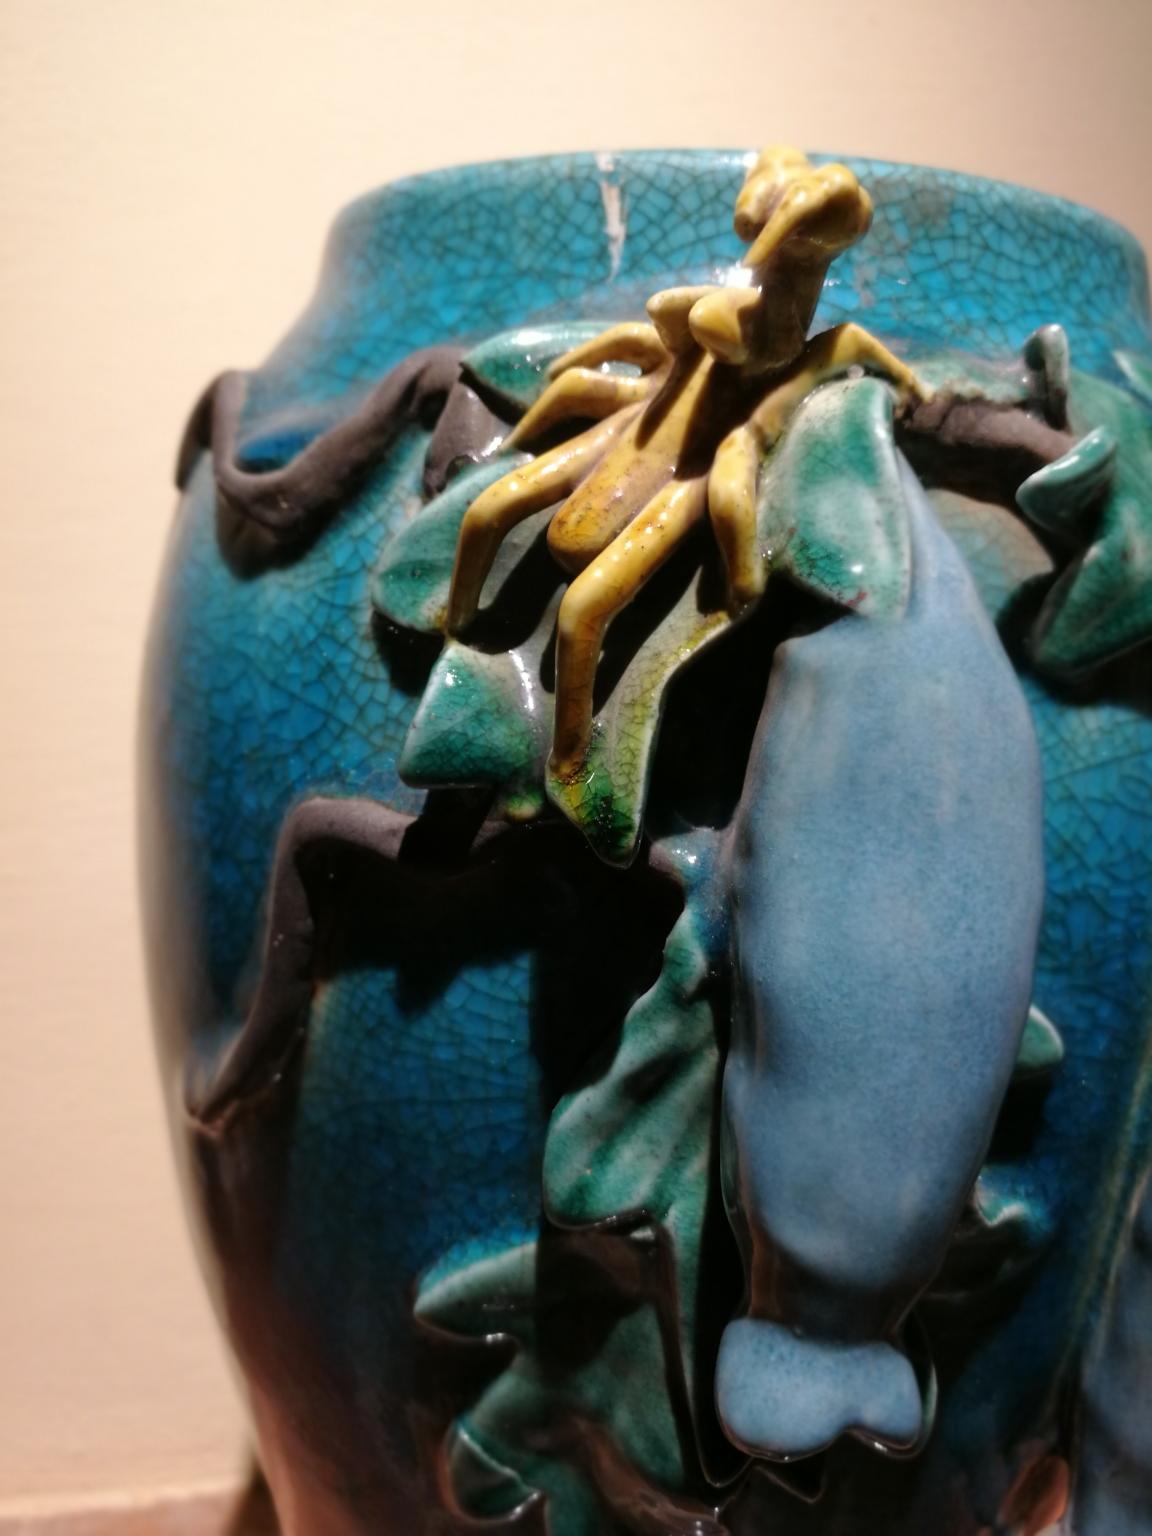 Vaso in ceramica smaltata azzurra (h 33 cm, piede 13 cm, bocca 22 cm)  raffigurante rami di edera, campanule azzurre e una cavalletta.
Proveniente da una manifattura di Salerno attiva alla metà del secolo scorso.